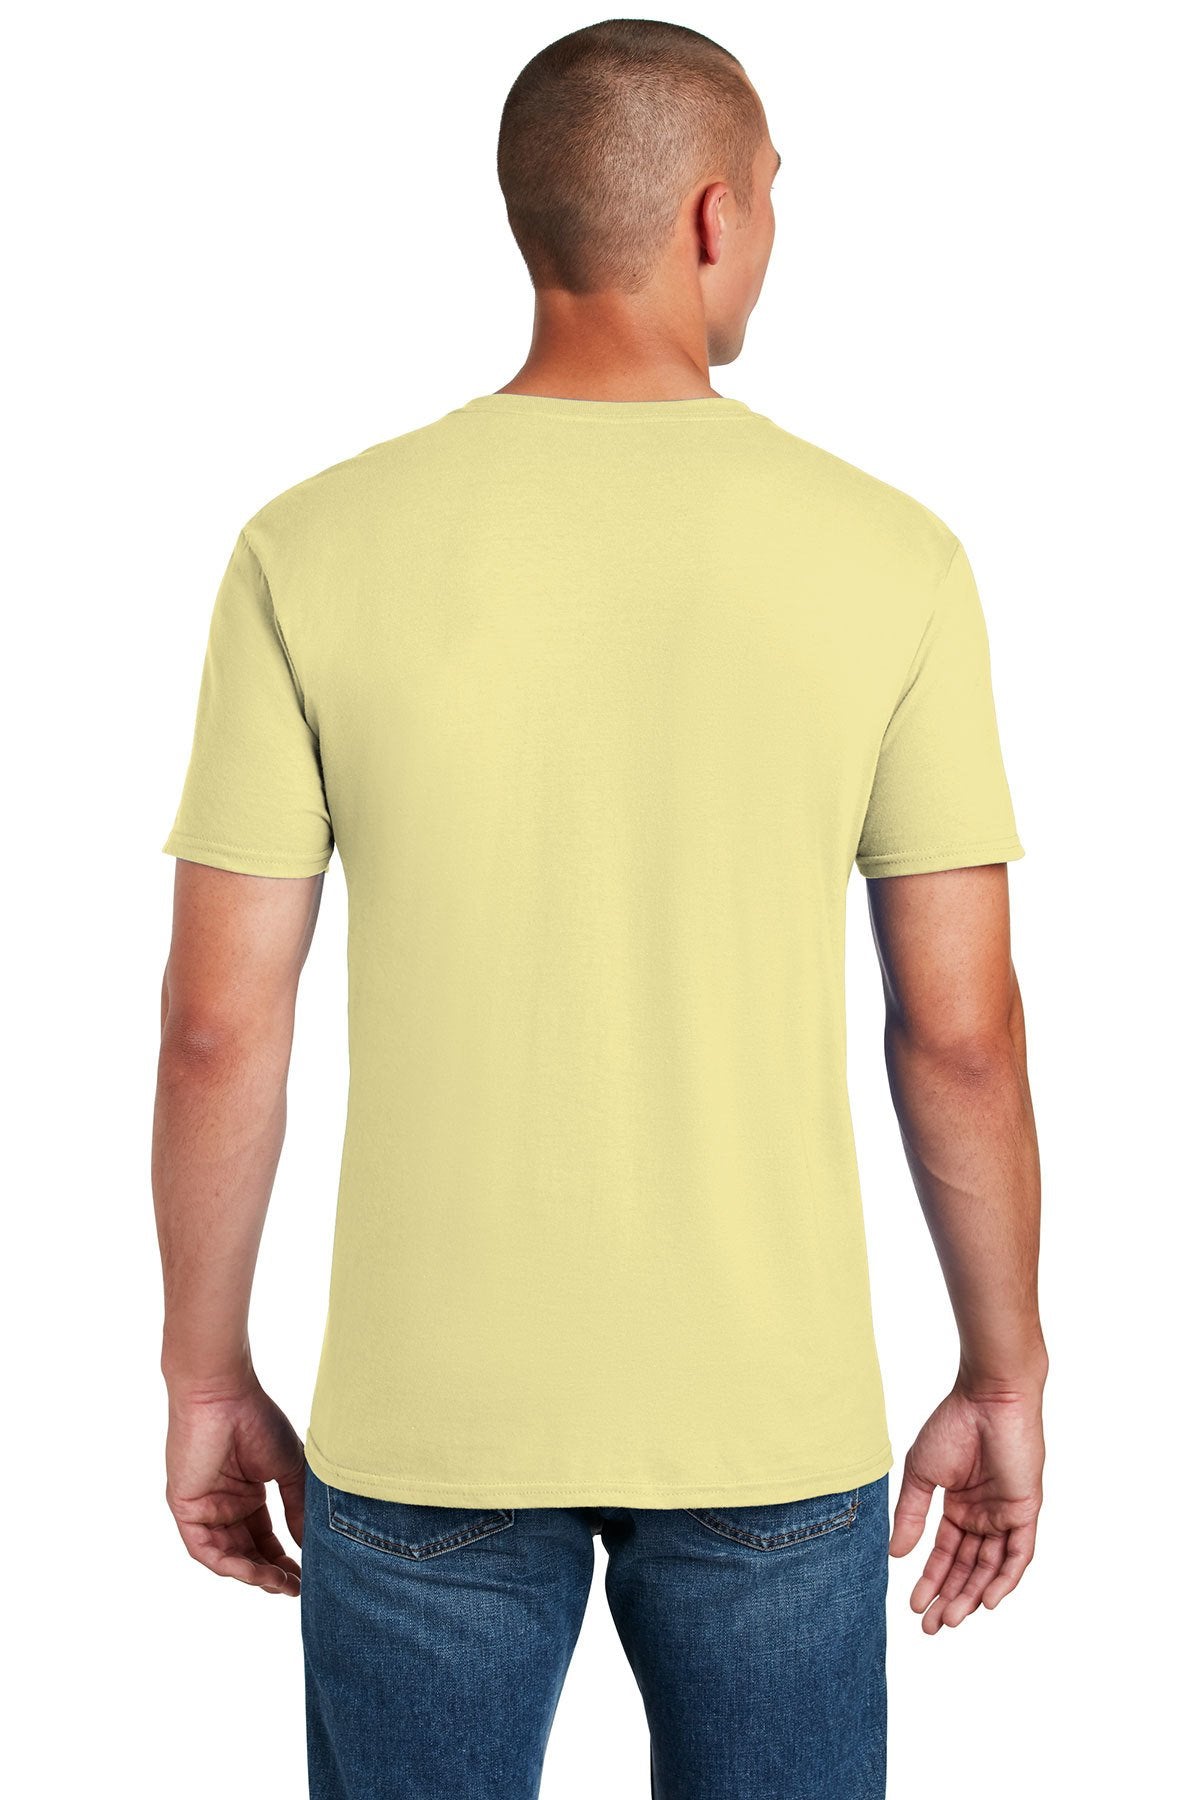 gildan softstyle t shirt 64000 corn silk